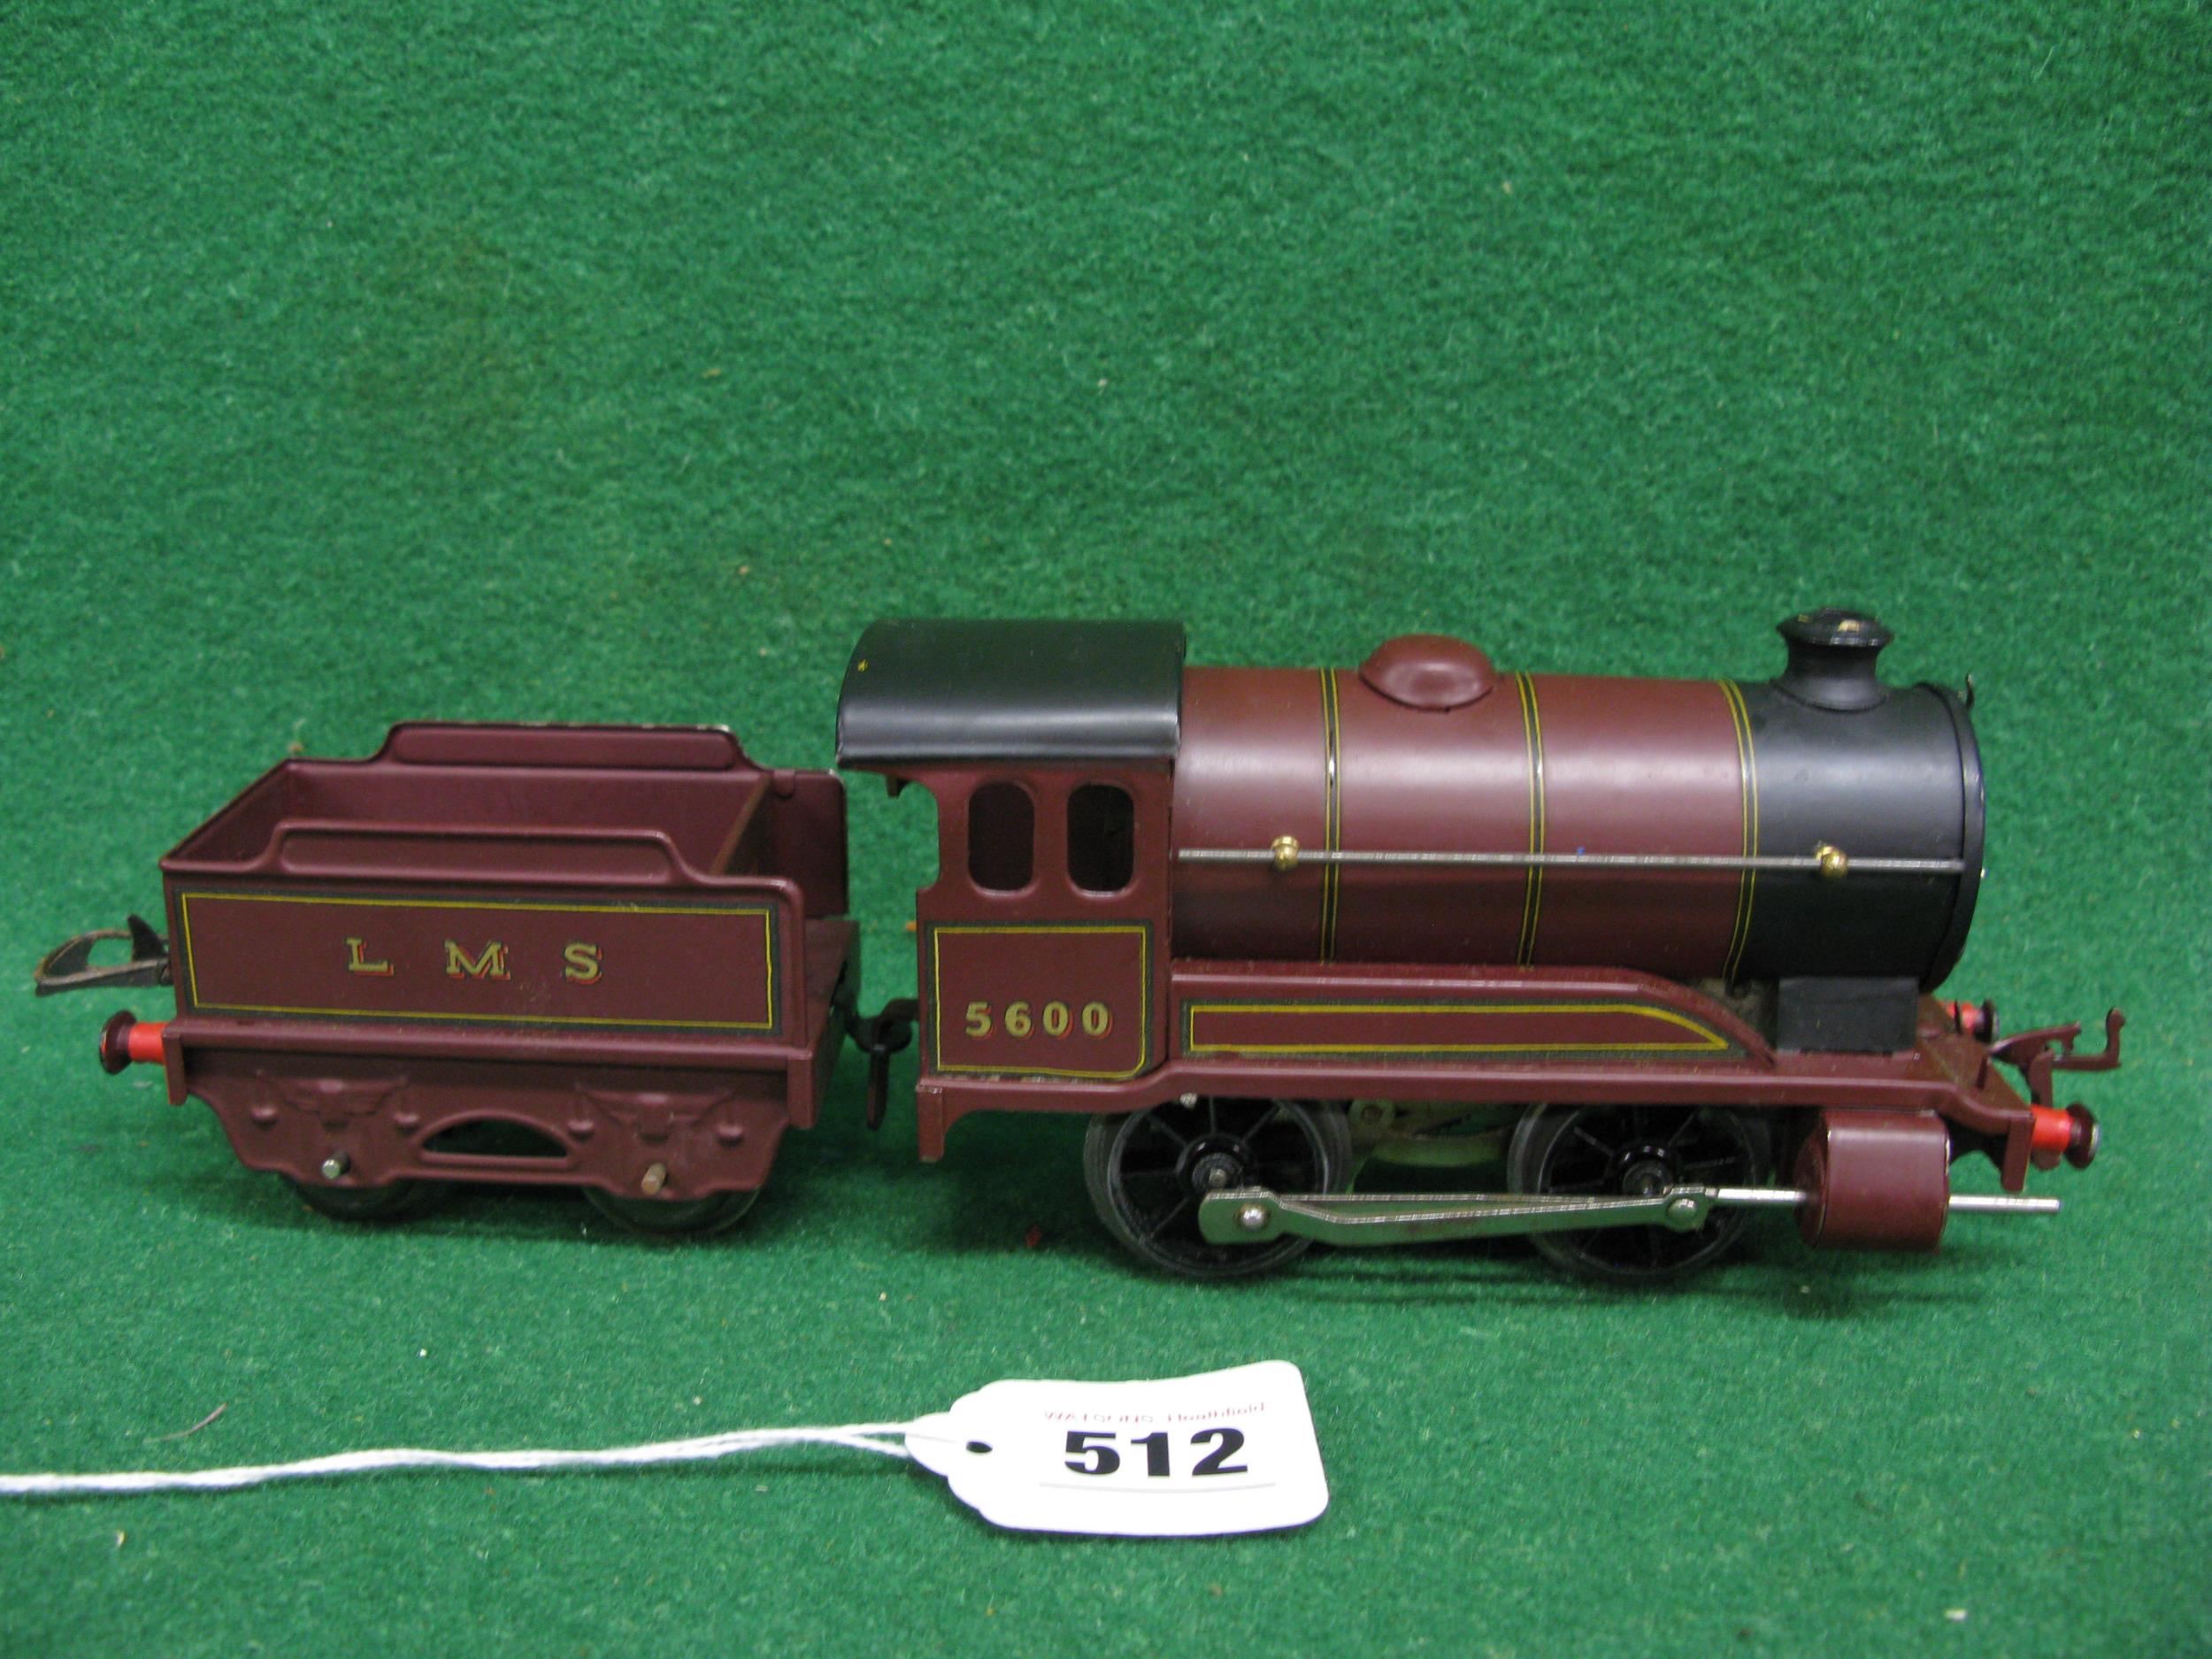 Post war boxed Hornby O gauge clockwork train set to comprise: 501 Type 0-4-0 tender locomotive - Image 5 of 6